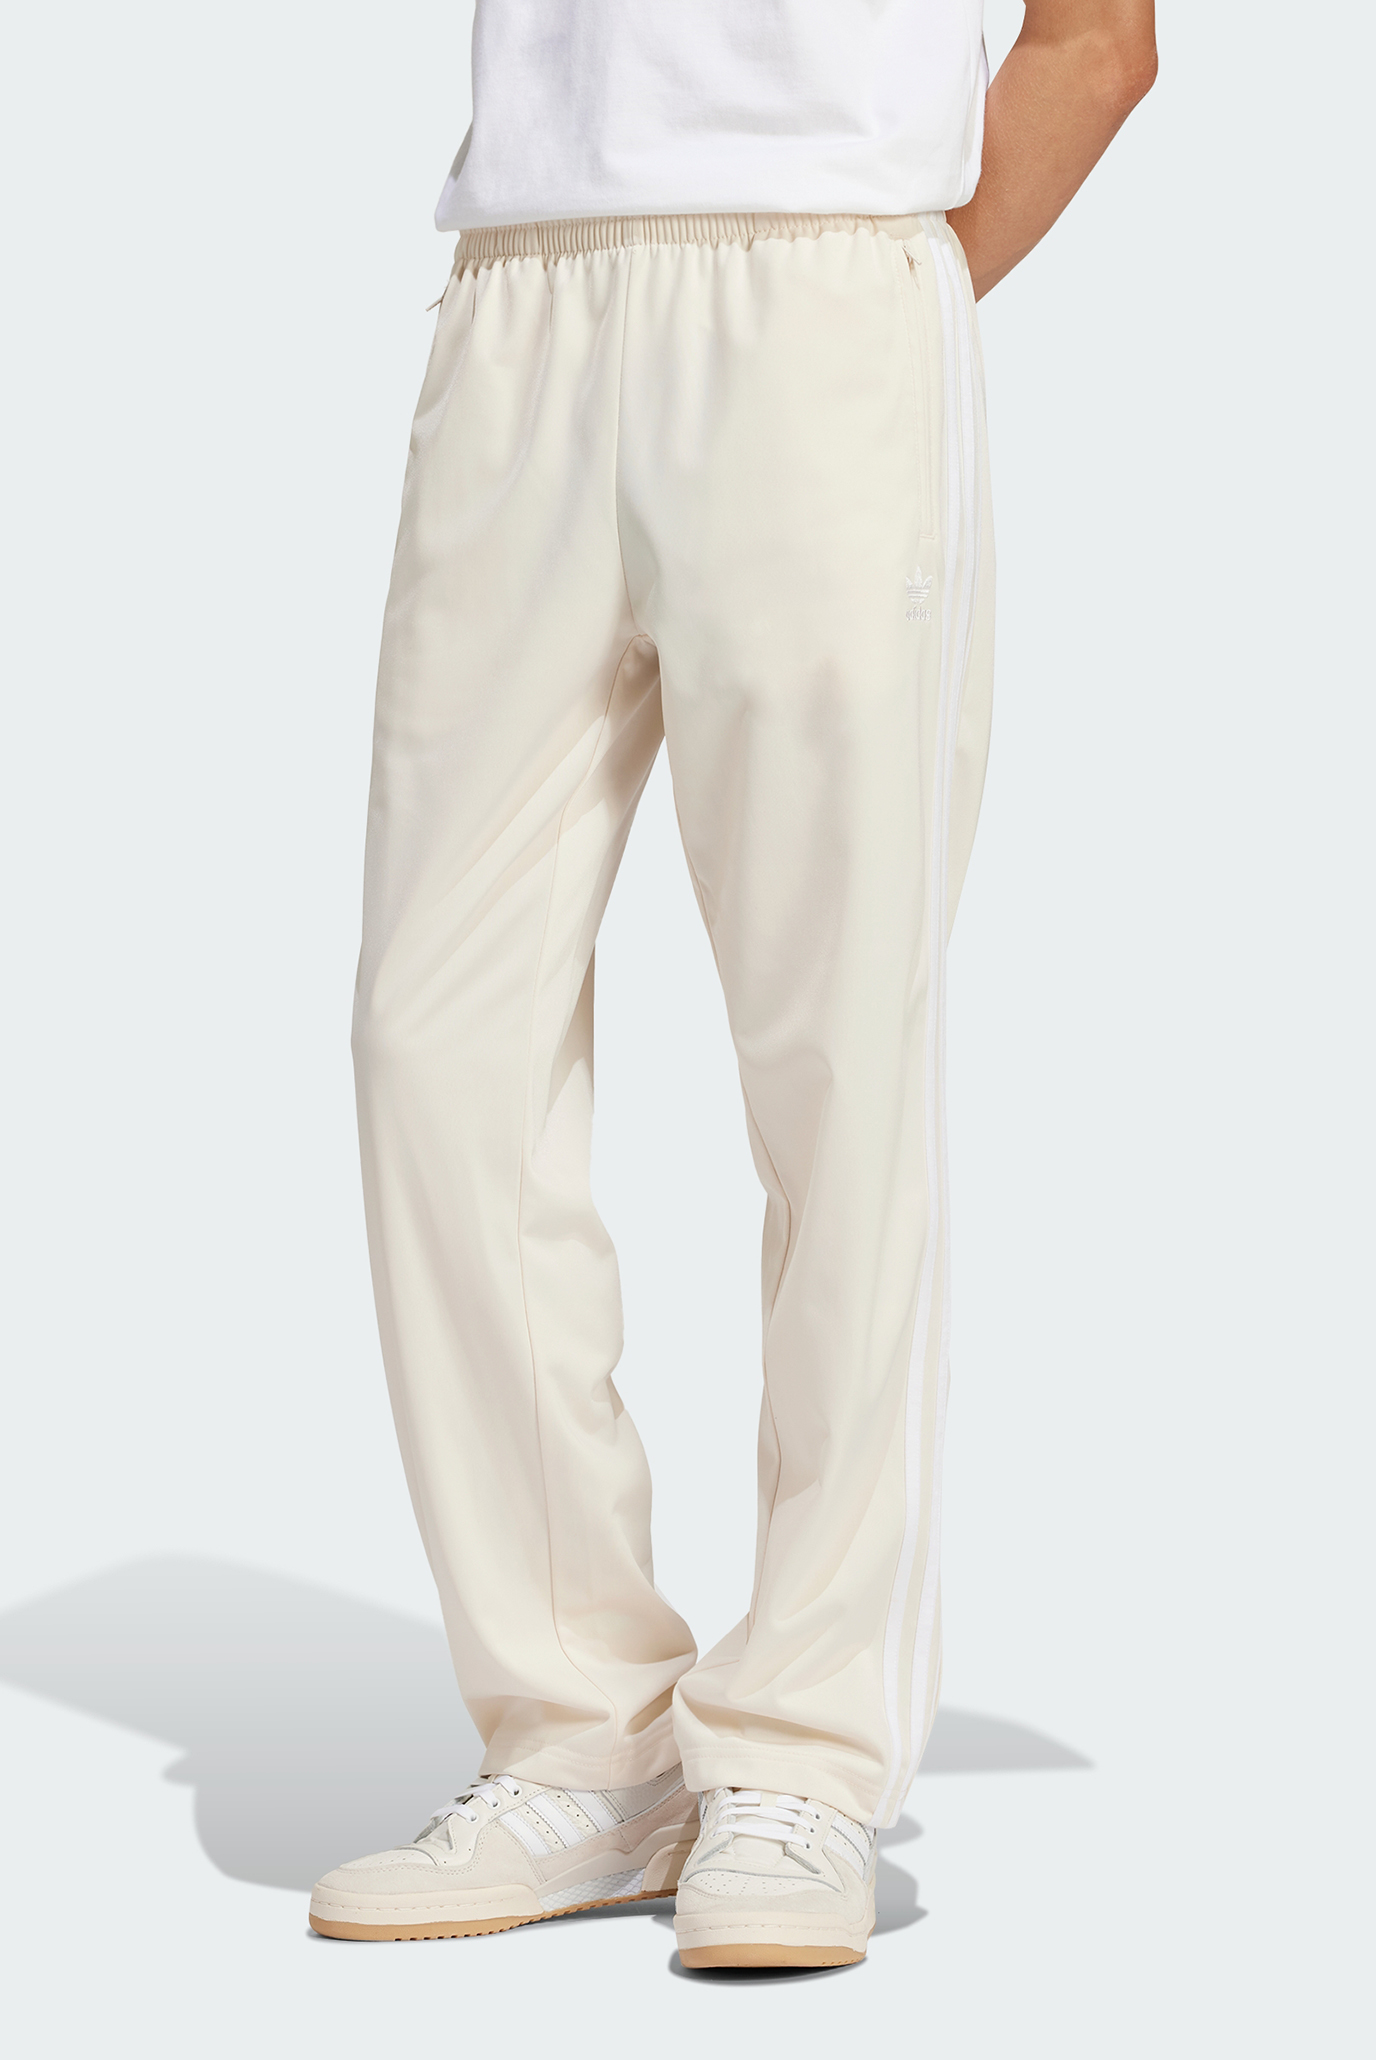 Чоловічі білі спортивні штани Adicolor Classics Classics Firebird 1